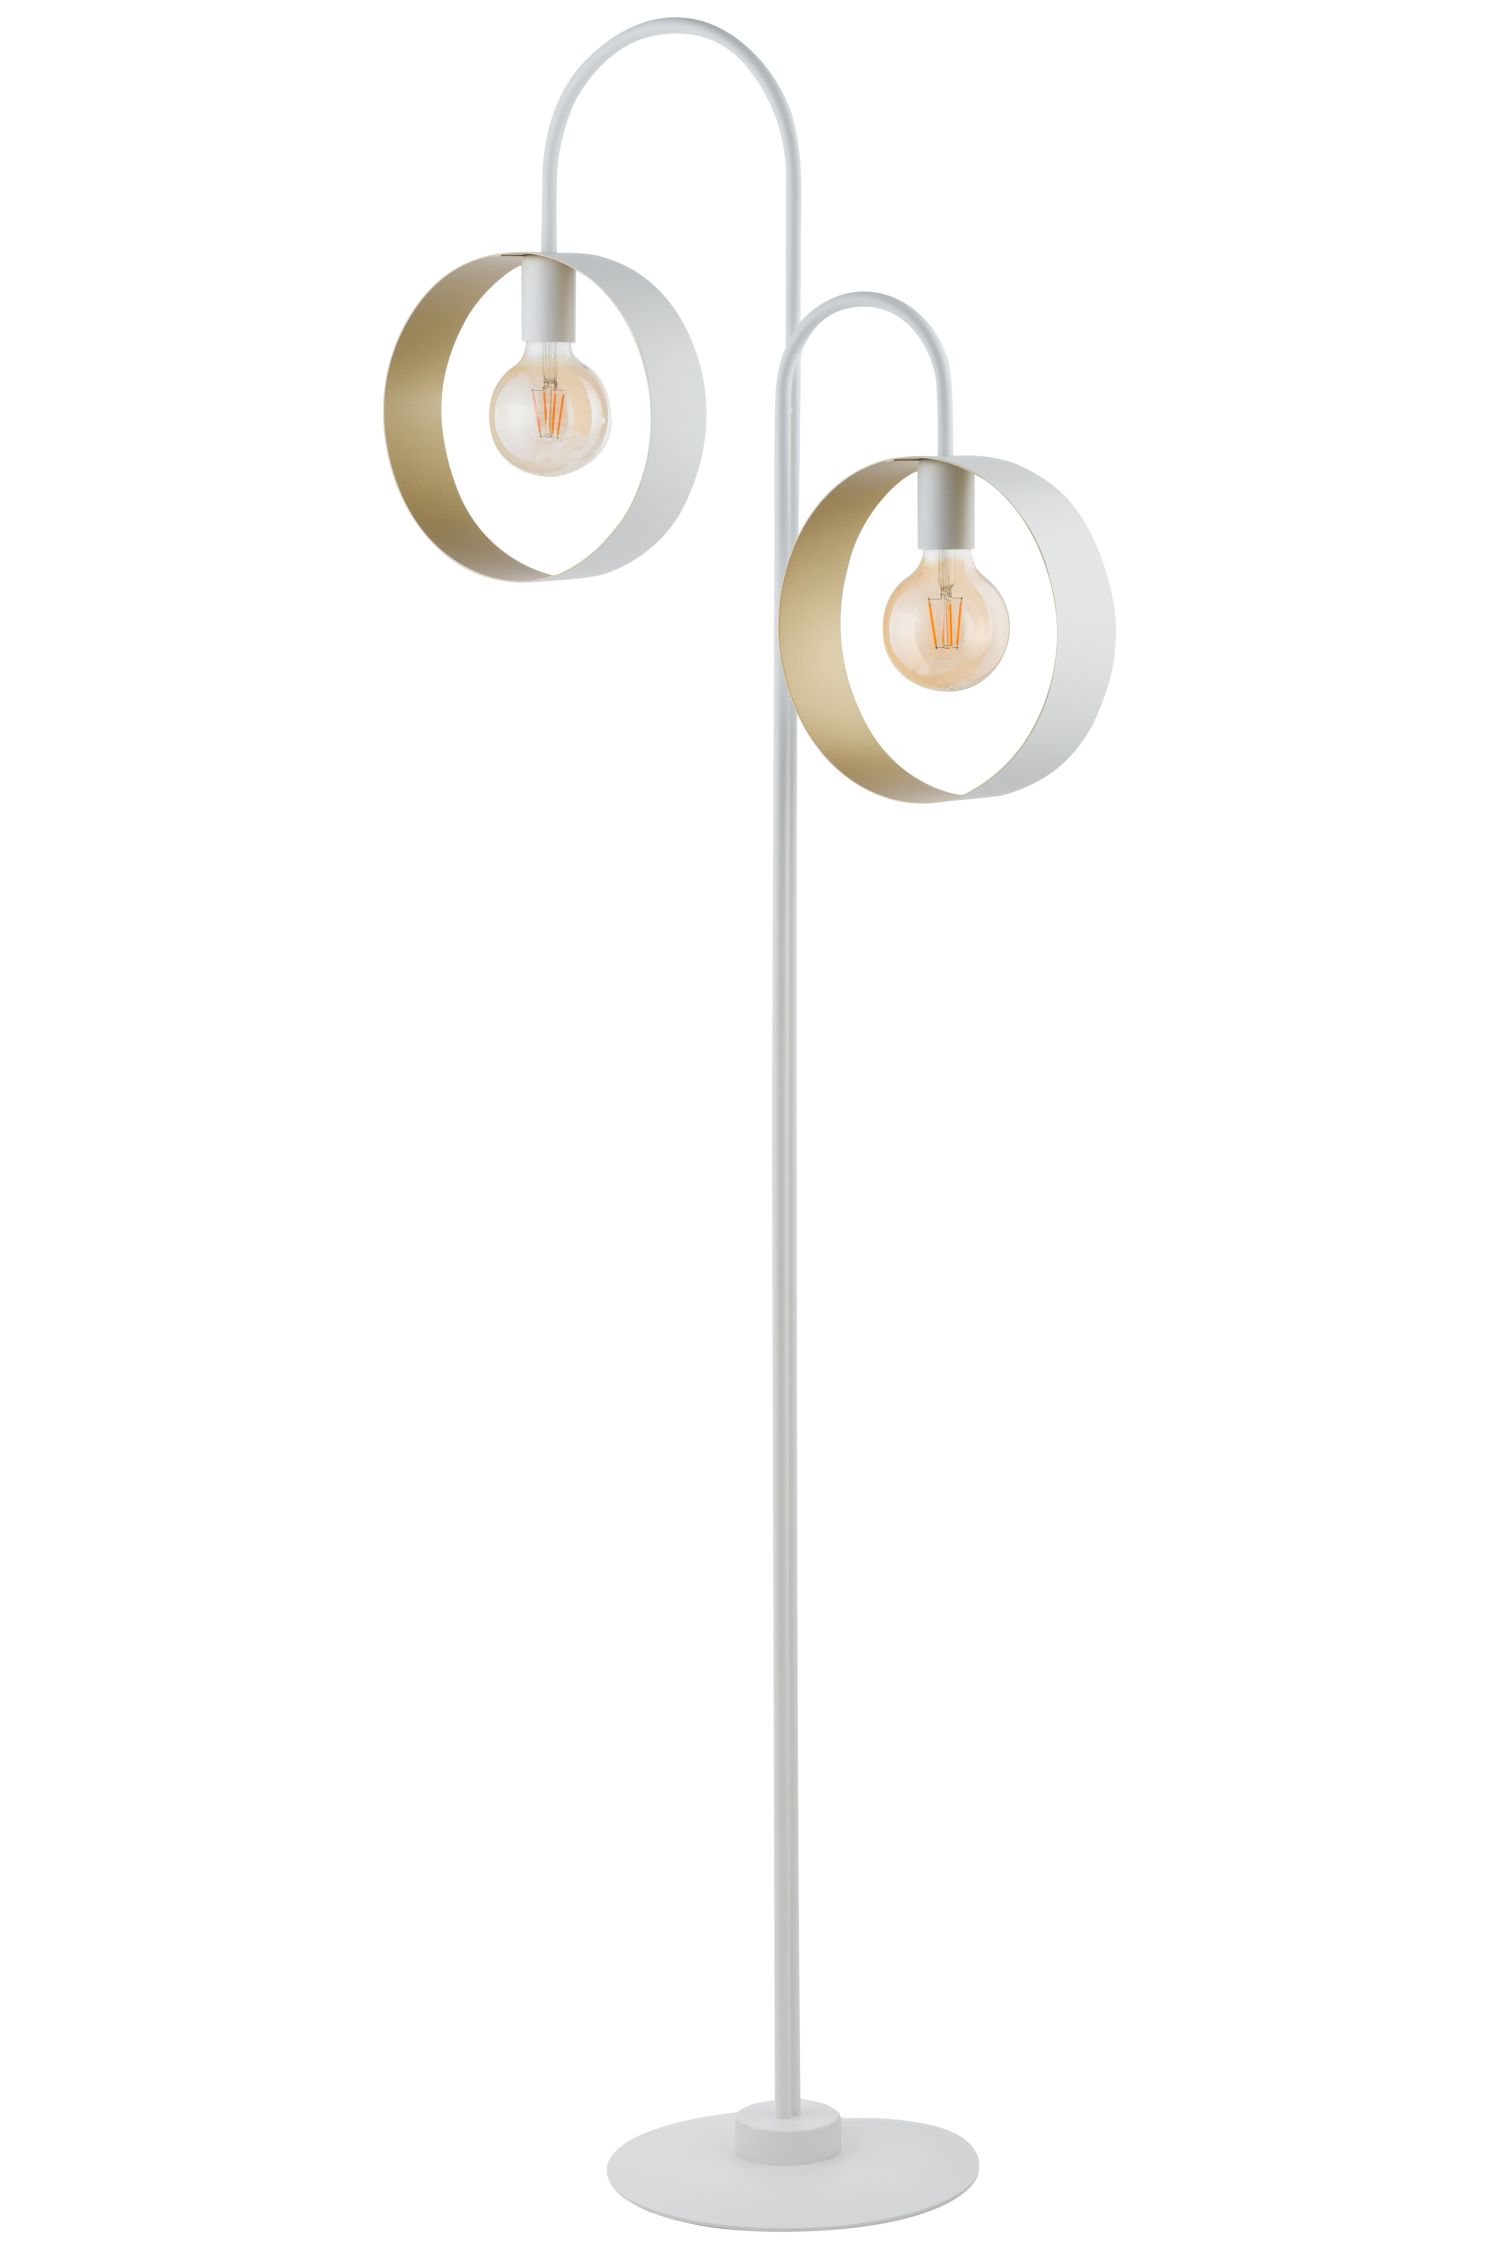 Große Stehlampe Metall 164 cm Weiß Gold Ringe dekorativ